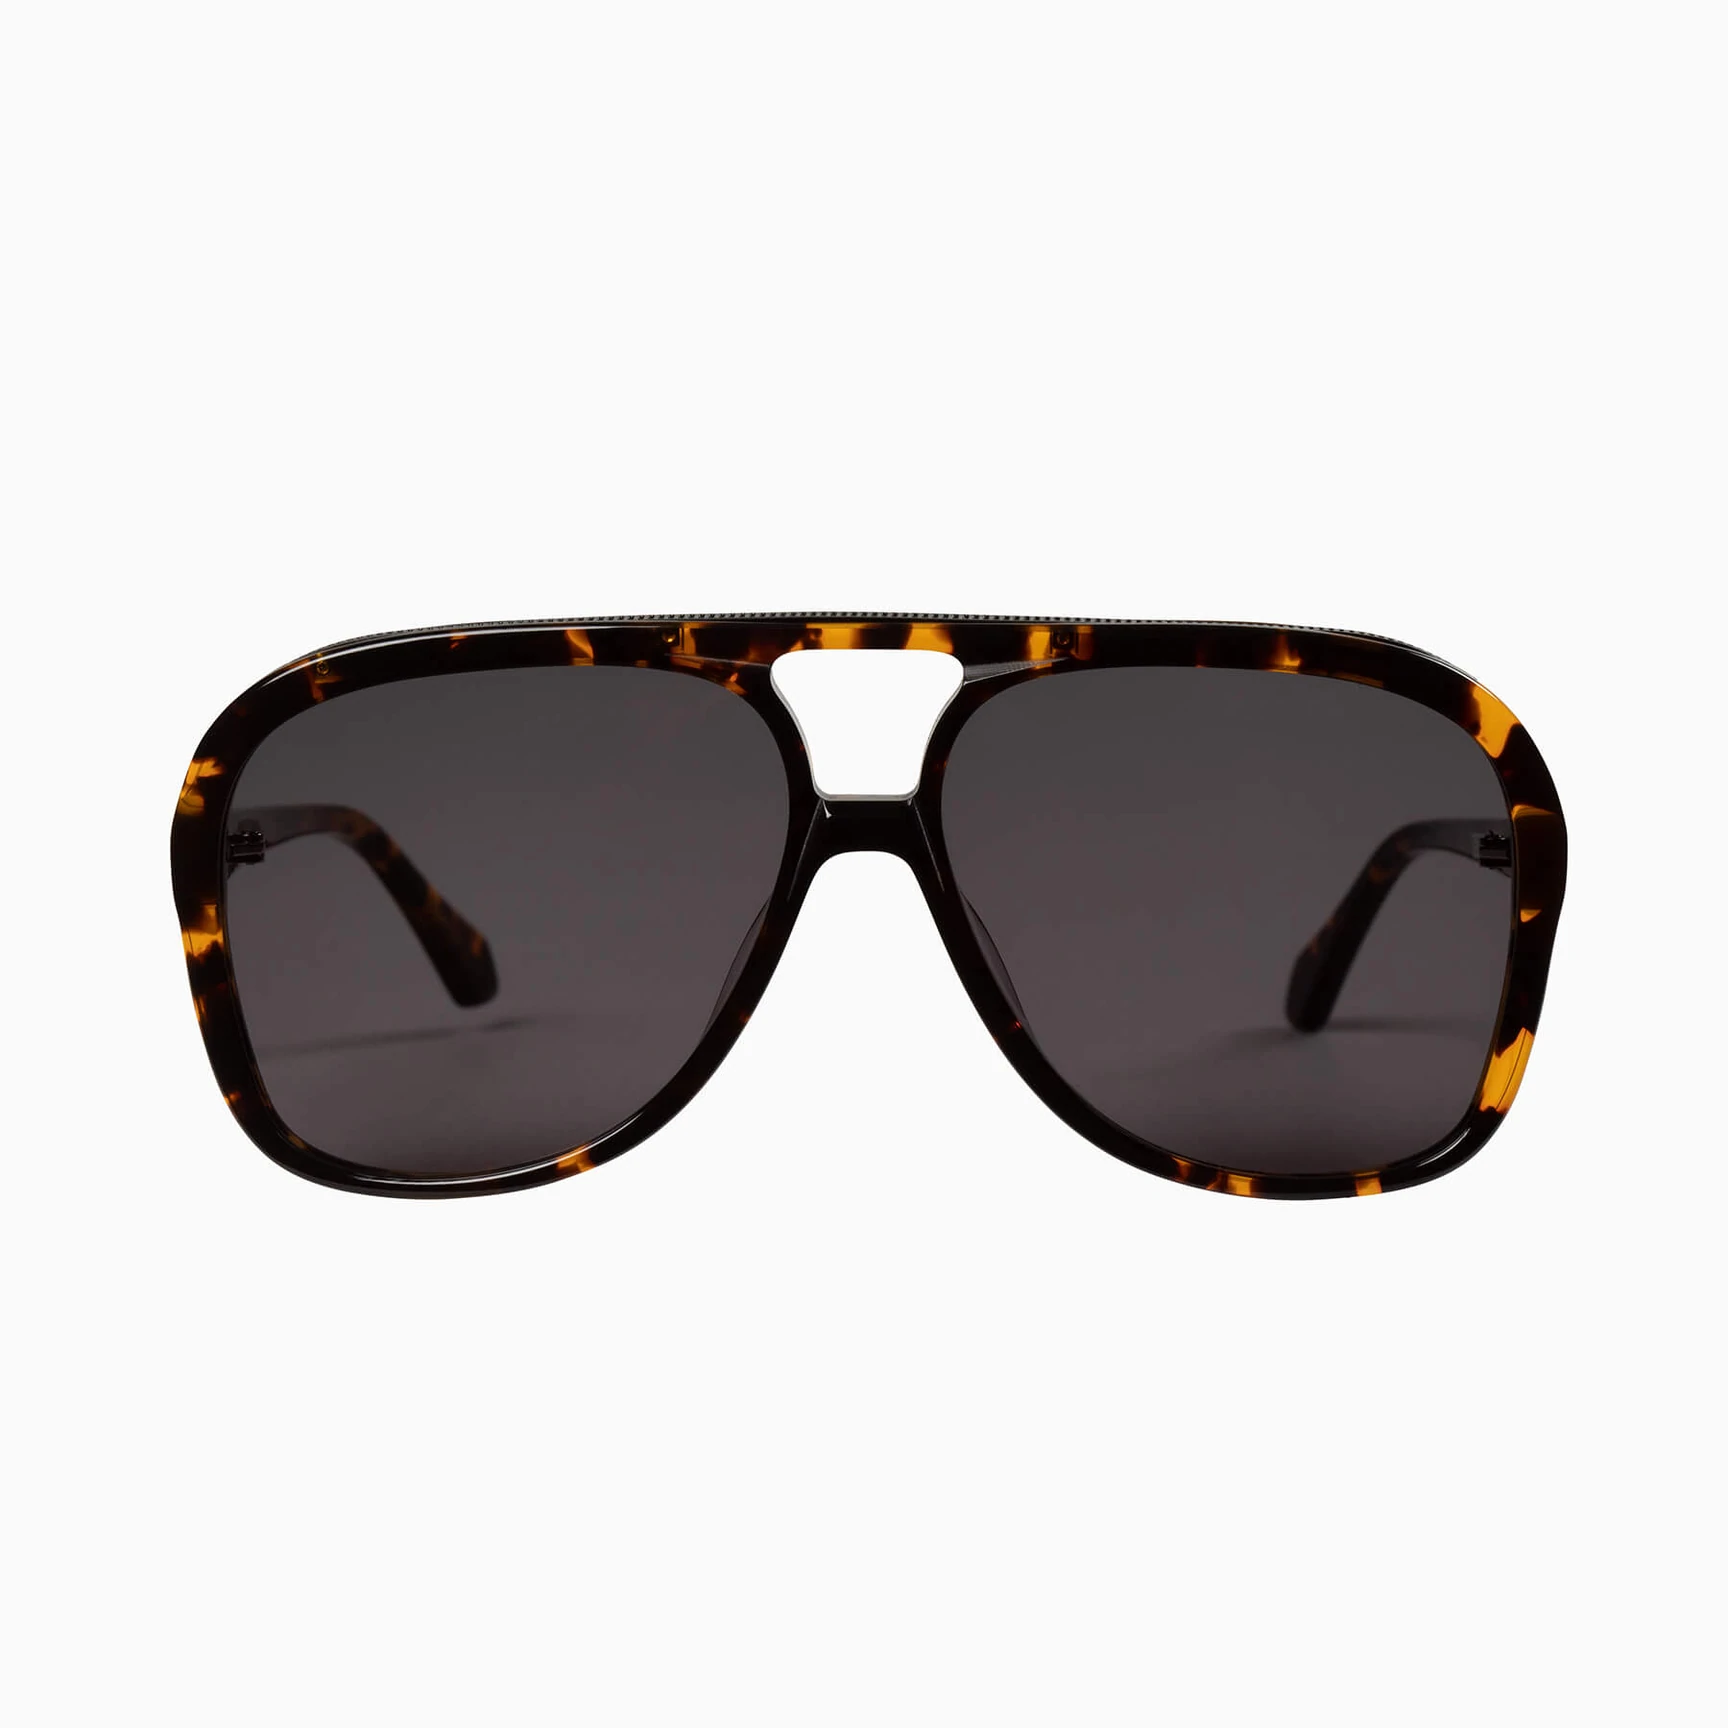 Bang | Sunglasses - Dark Tortoise w. Matte Black Metal Trim / Black Lens